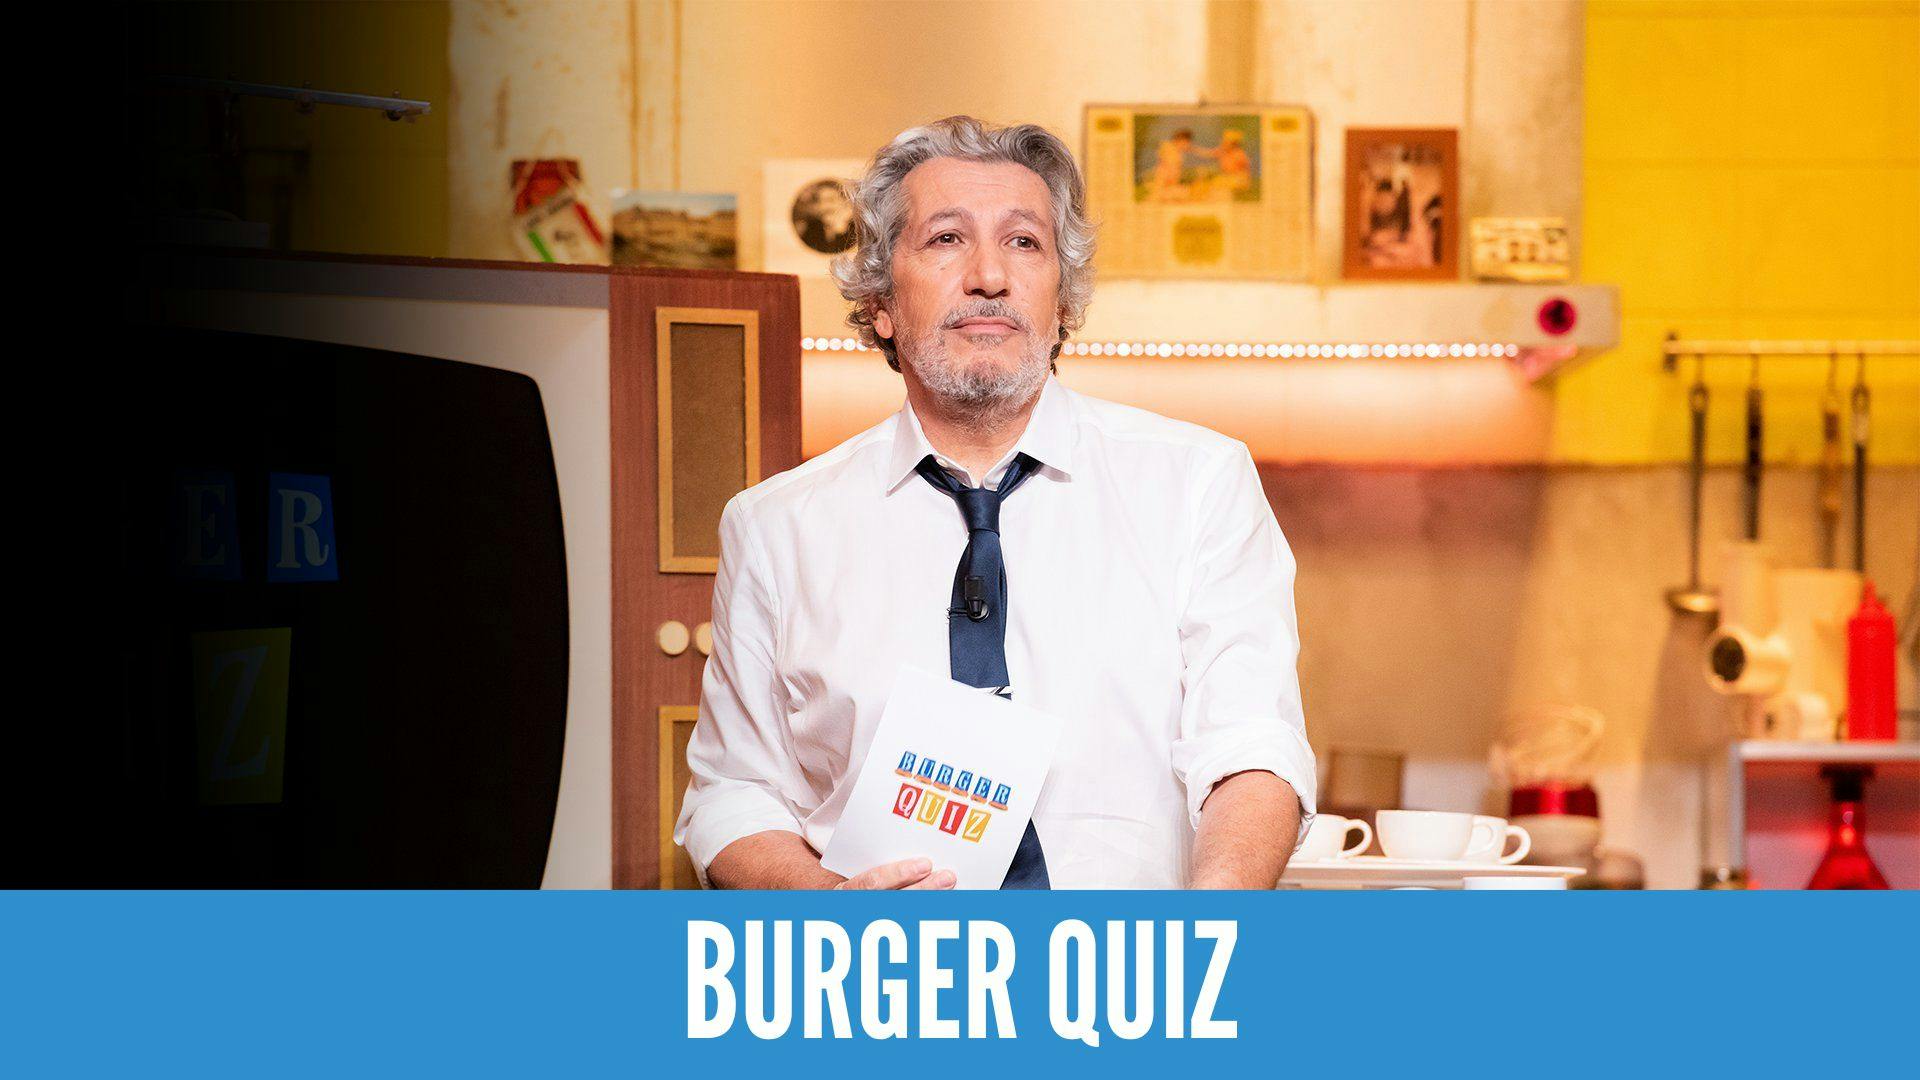 photo de l’animateur du jeu télévisé "Burger quiz" et un titre sur fond bleu